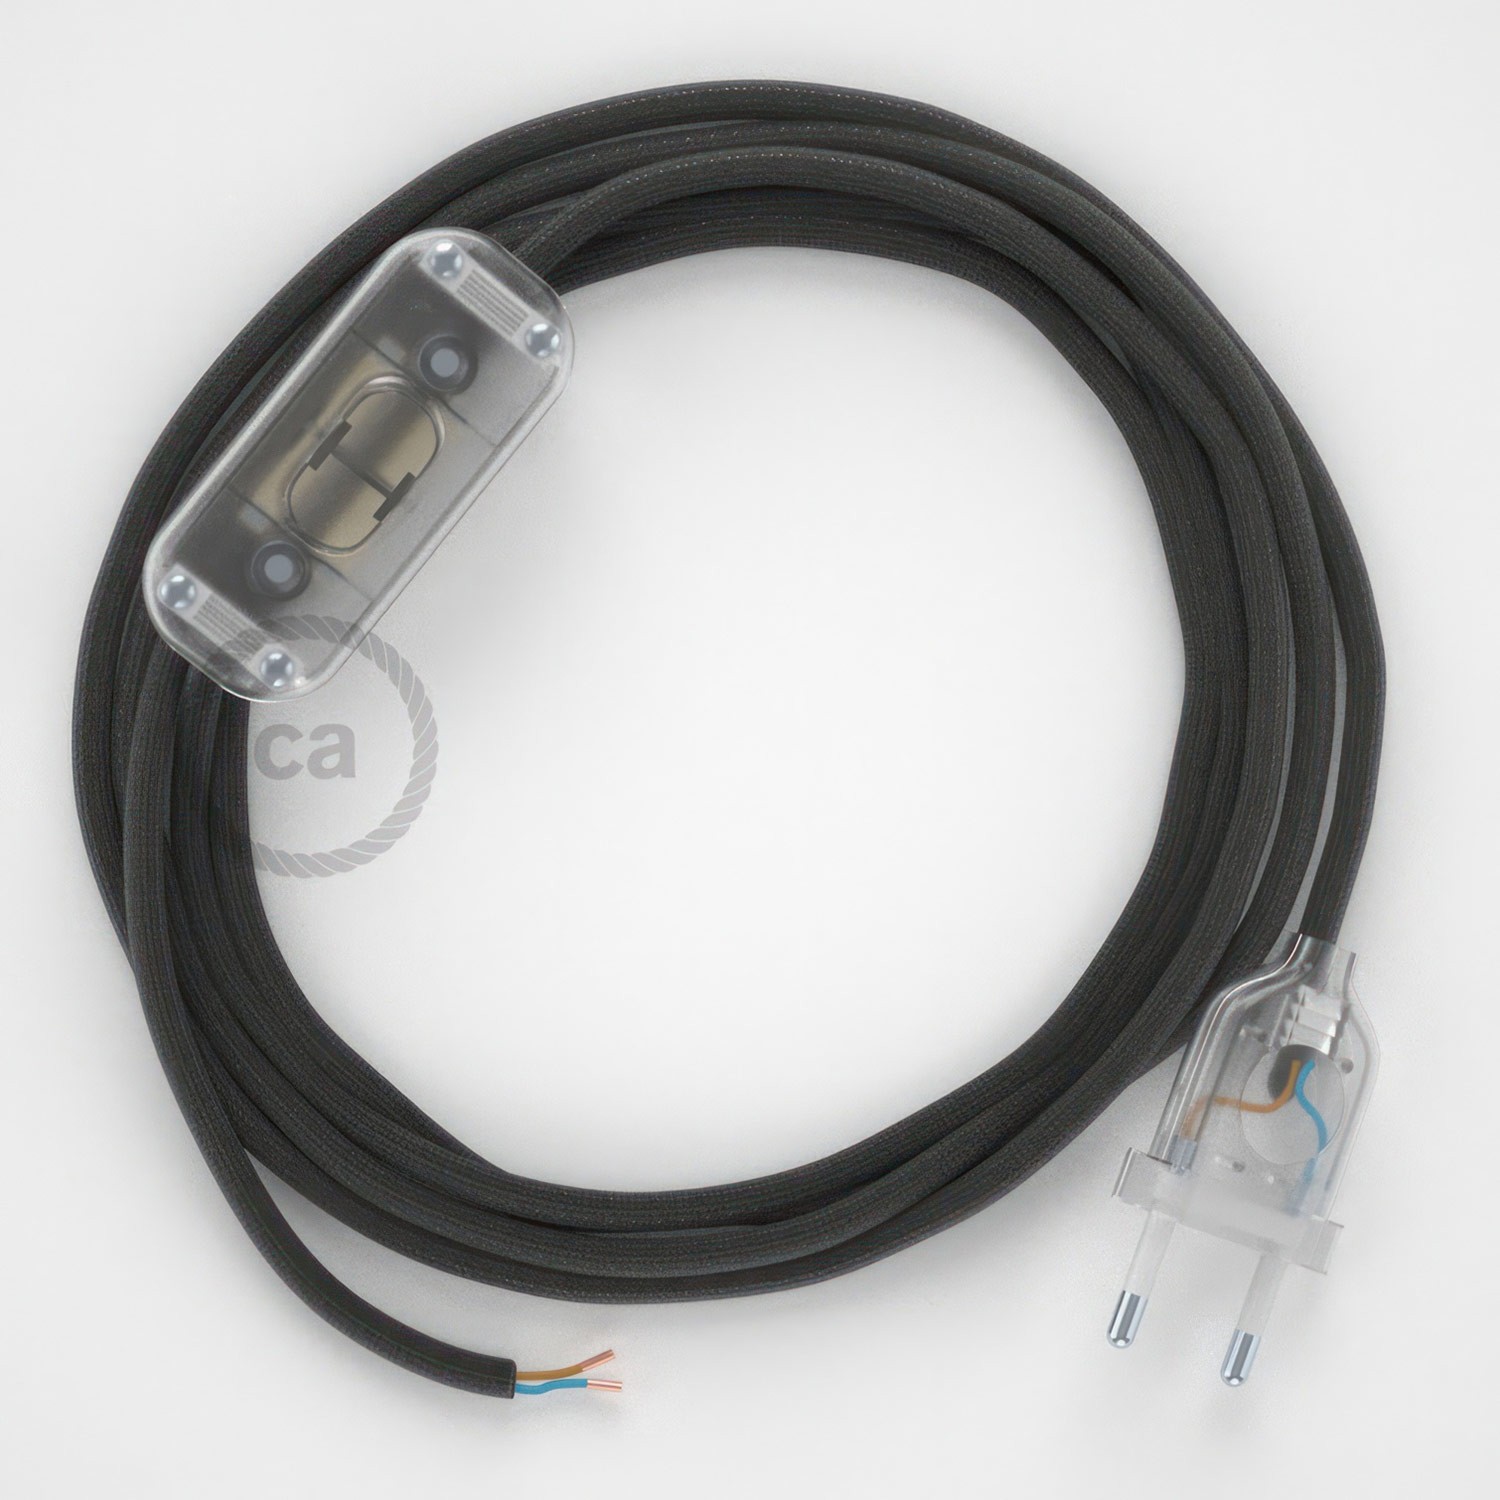 Cableado para lámpara, cable RM26 Efecto Seda Gris Oscuro 1,8m. Elige tu el color de la clavija y del interruptor!